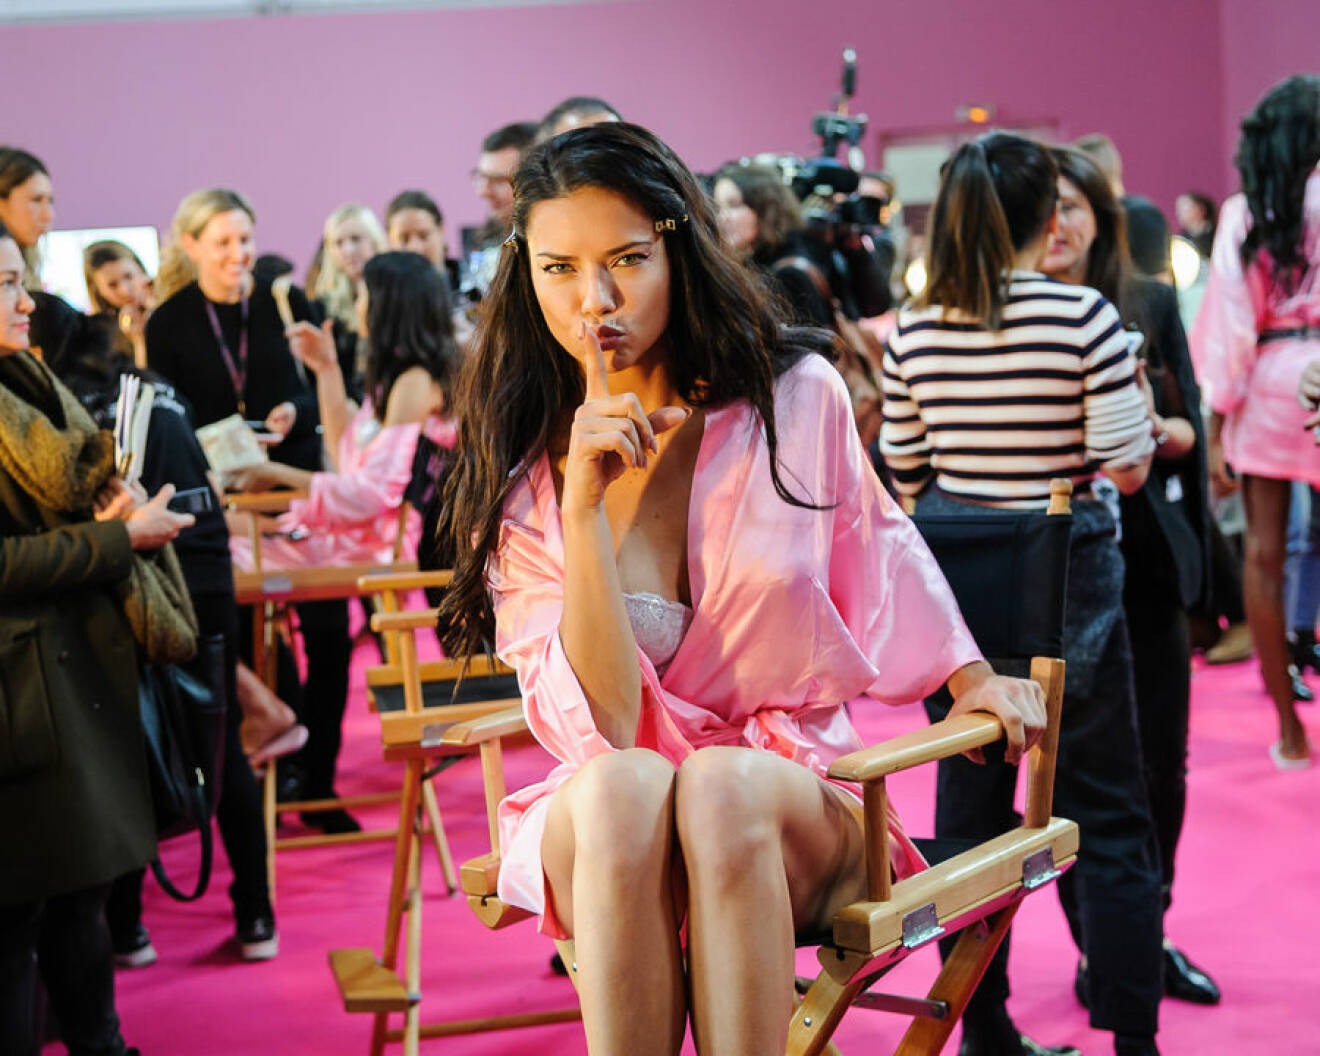 2016 Victoria's Secret Fashion Show in Paris - Hair & Makeup at Grand Palais Featuring: Adriana Lima Where: Paris, France When: 30 Nov 2016 Credit: C.Smith/WENN.com